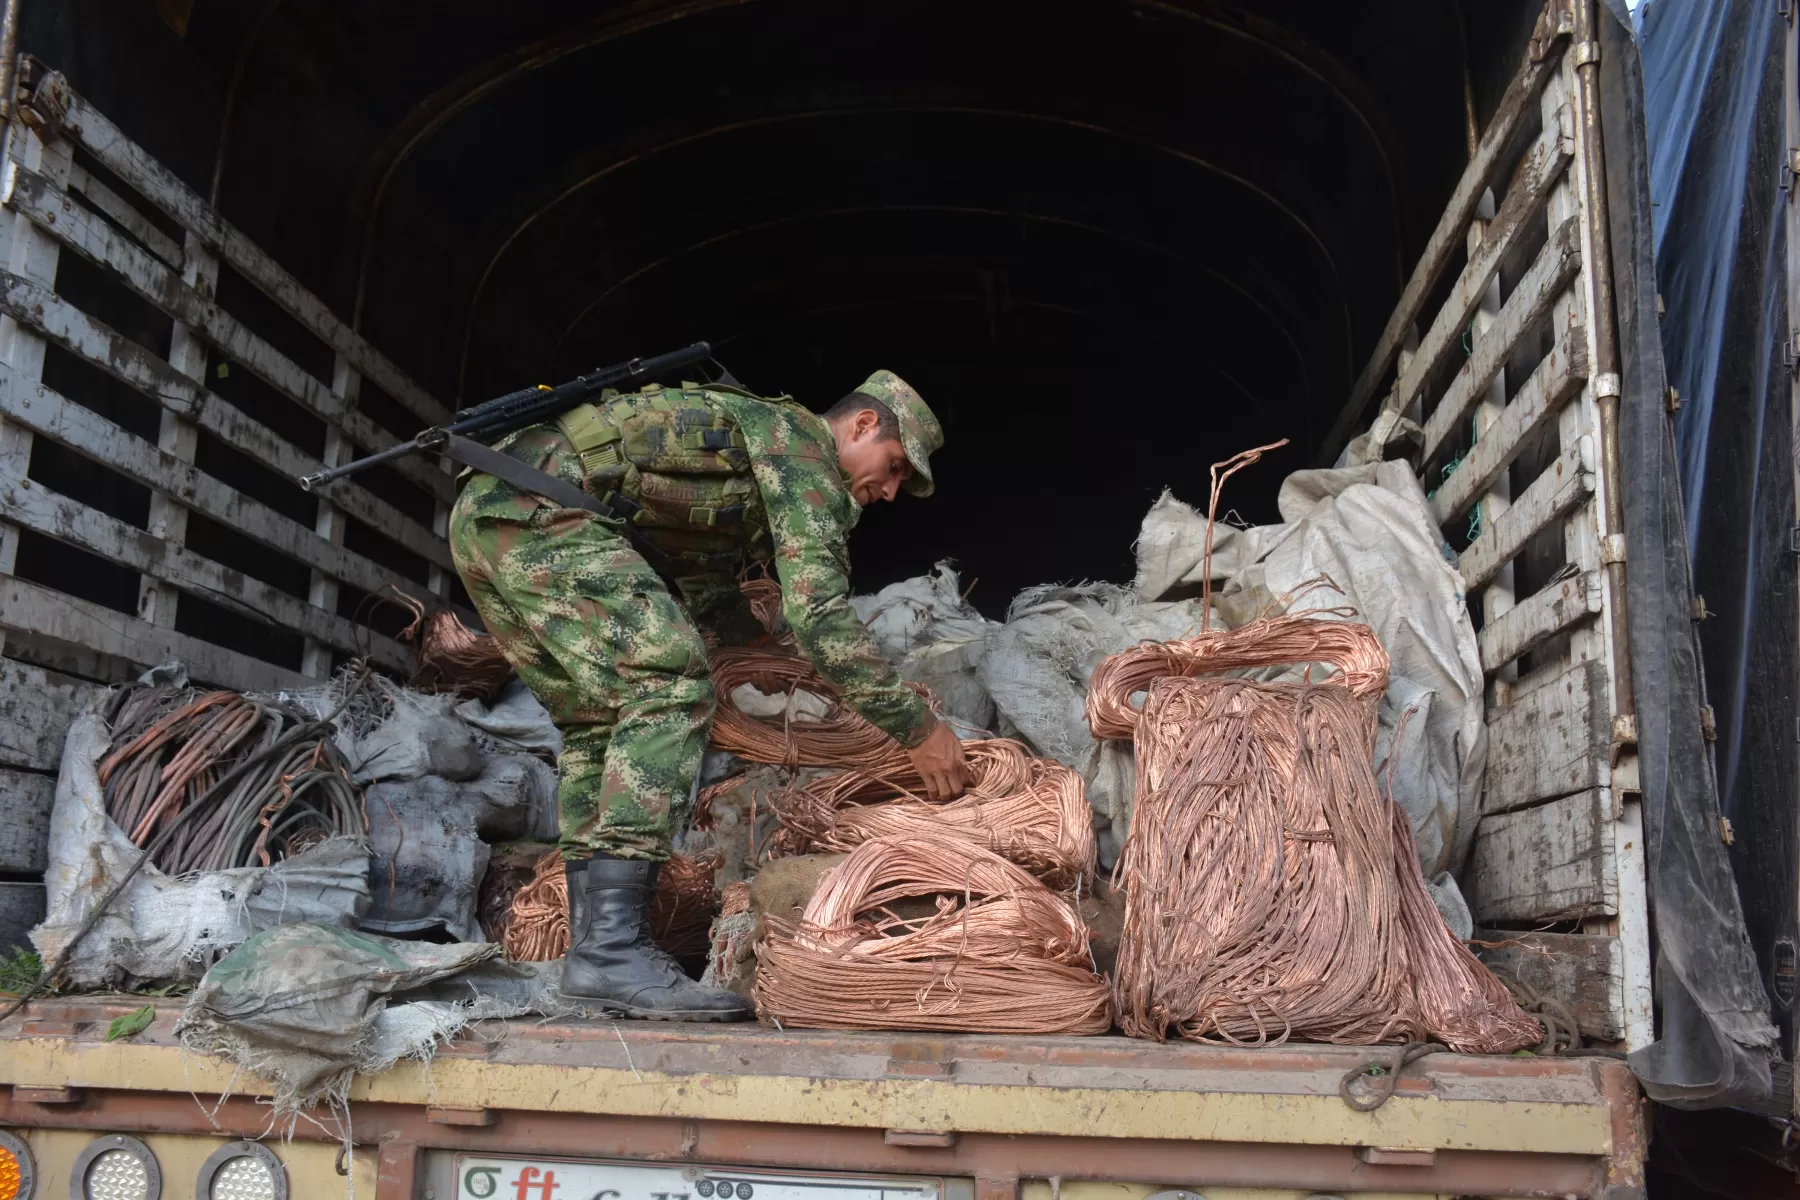 Ejército incautó los metales en el sector de la vereda El Caracol zona rural de la capital del departamento de Arauca.